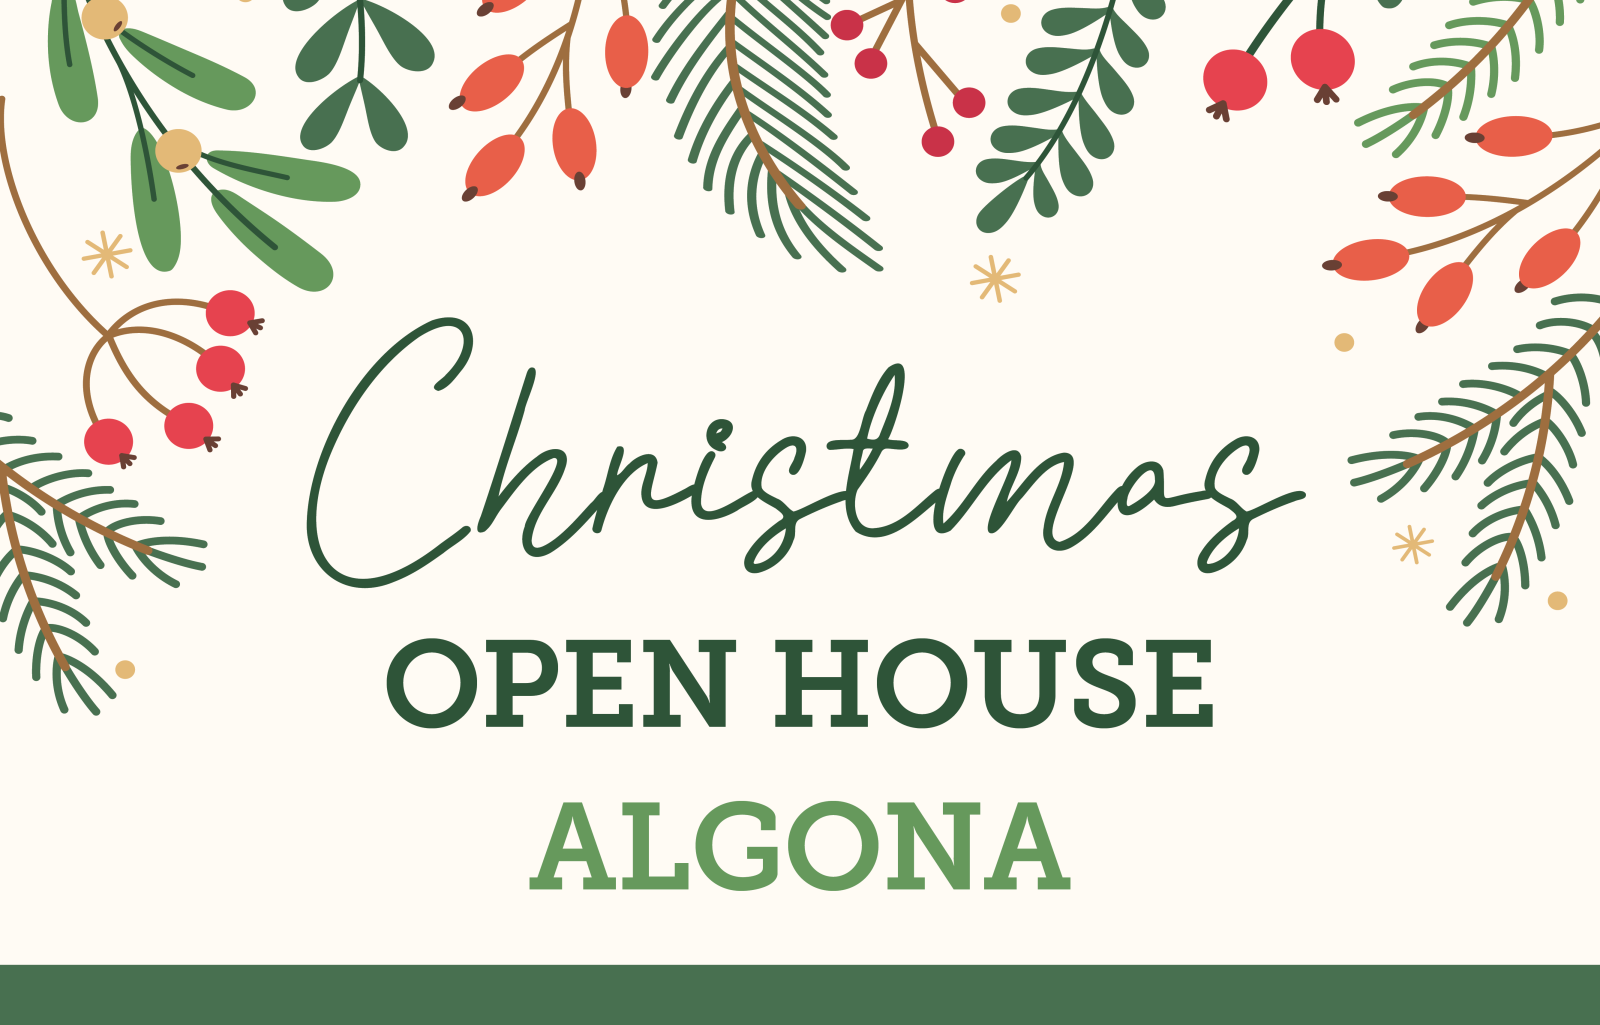 Holiday Open House | Algona